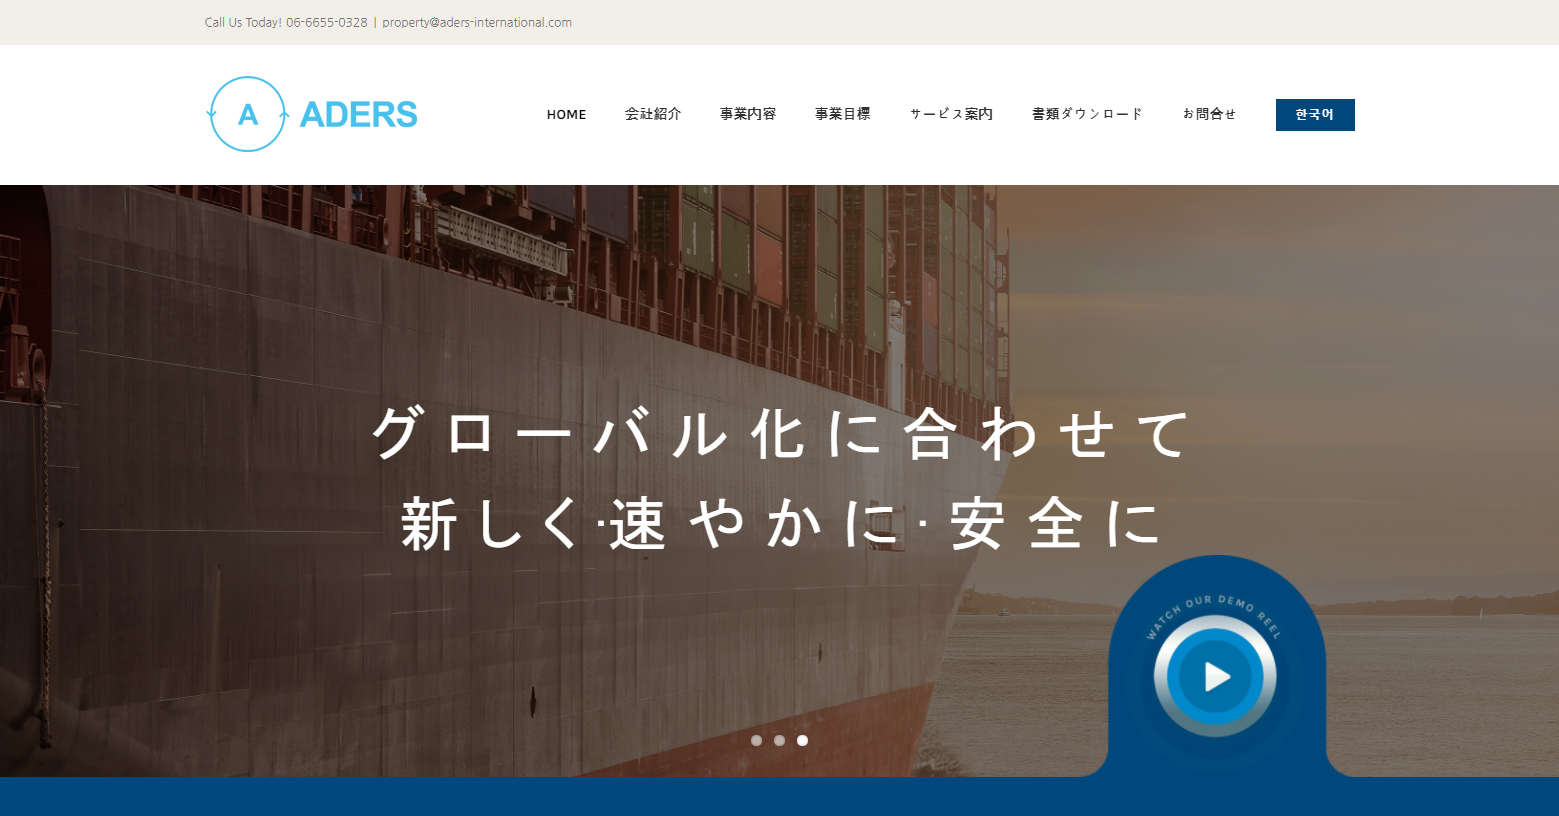 포트폴리오-일본기업 두가지 언어 지원